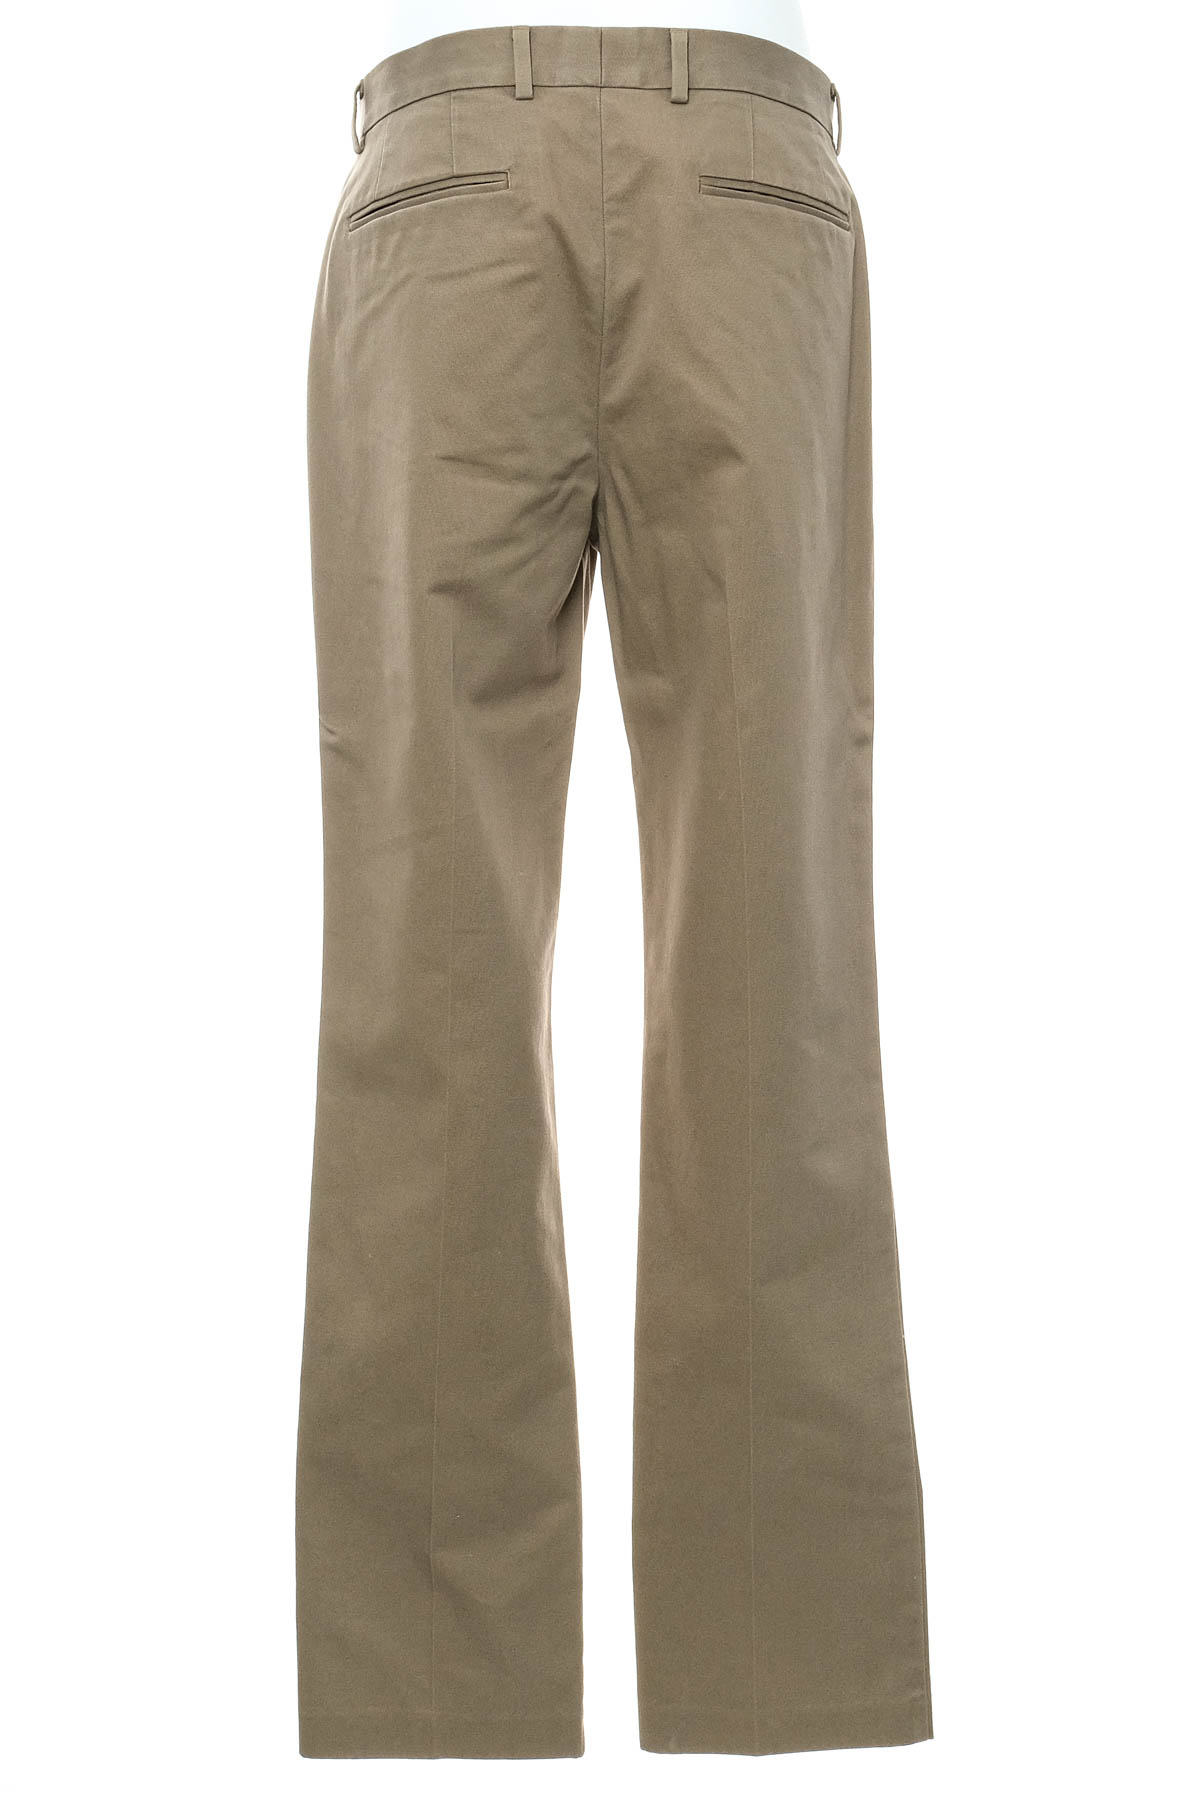 Men's trousers - CHARLES TYRWHITT - 1